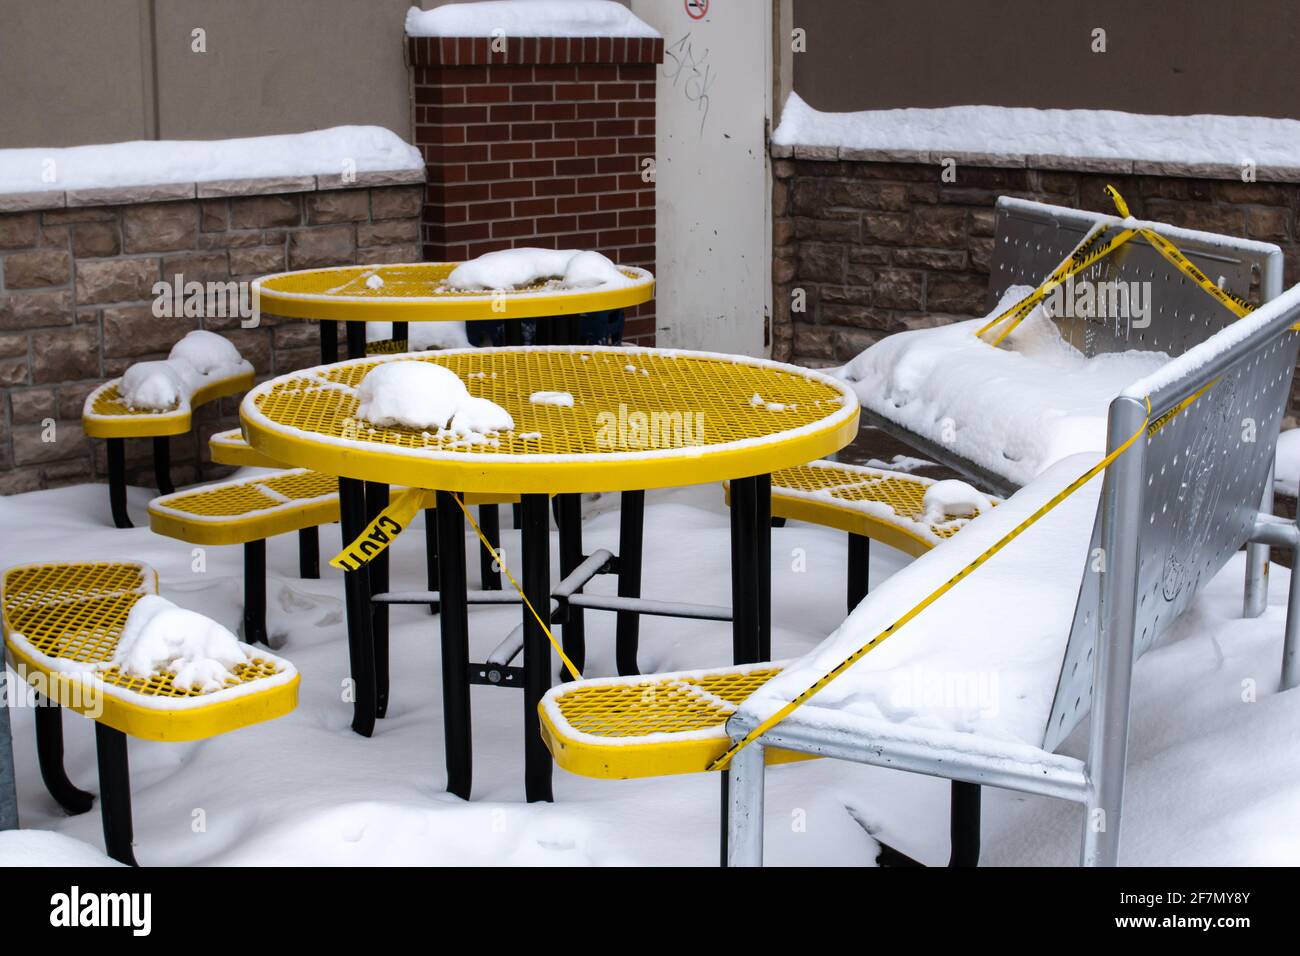 London, Ontario, Canada - février 15 2021 : une table de barbecue en métal jaune avec des bancs à l'extérieur d'une dalle de marbre creamery à London est recouverte de neige. Banque D'Images